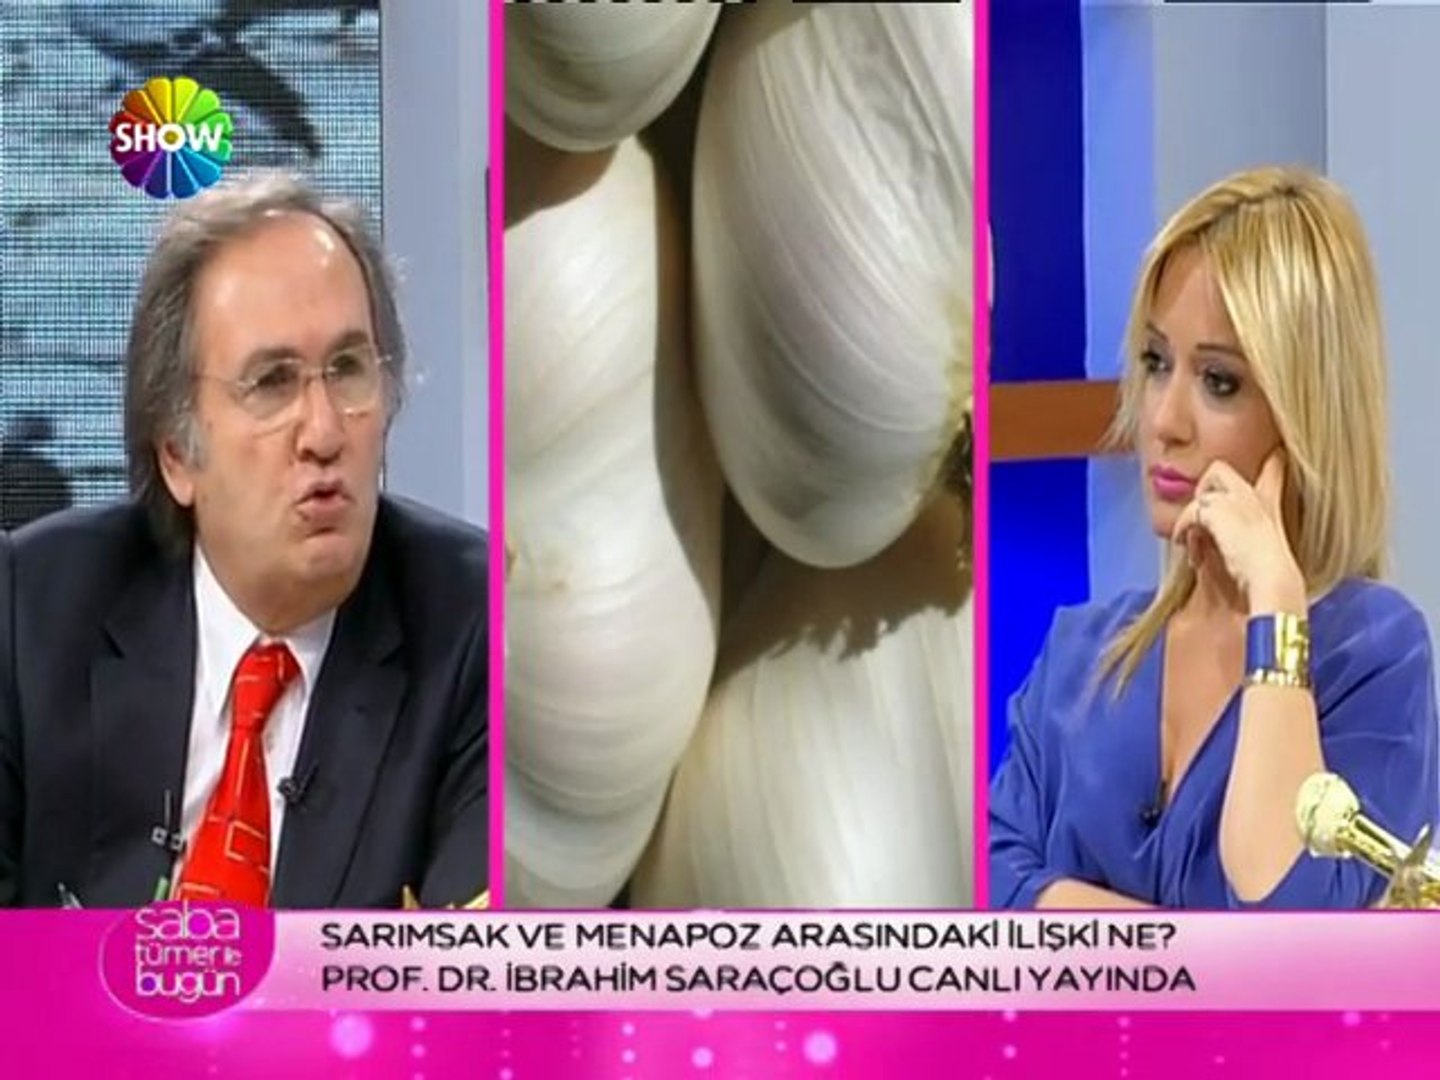 Prof. Dr. İbrahim Saraçoğlu - Sarımsak ve menapoz ilişkisi - Dailymotion  Video